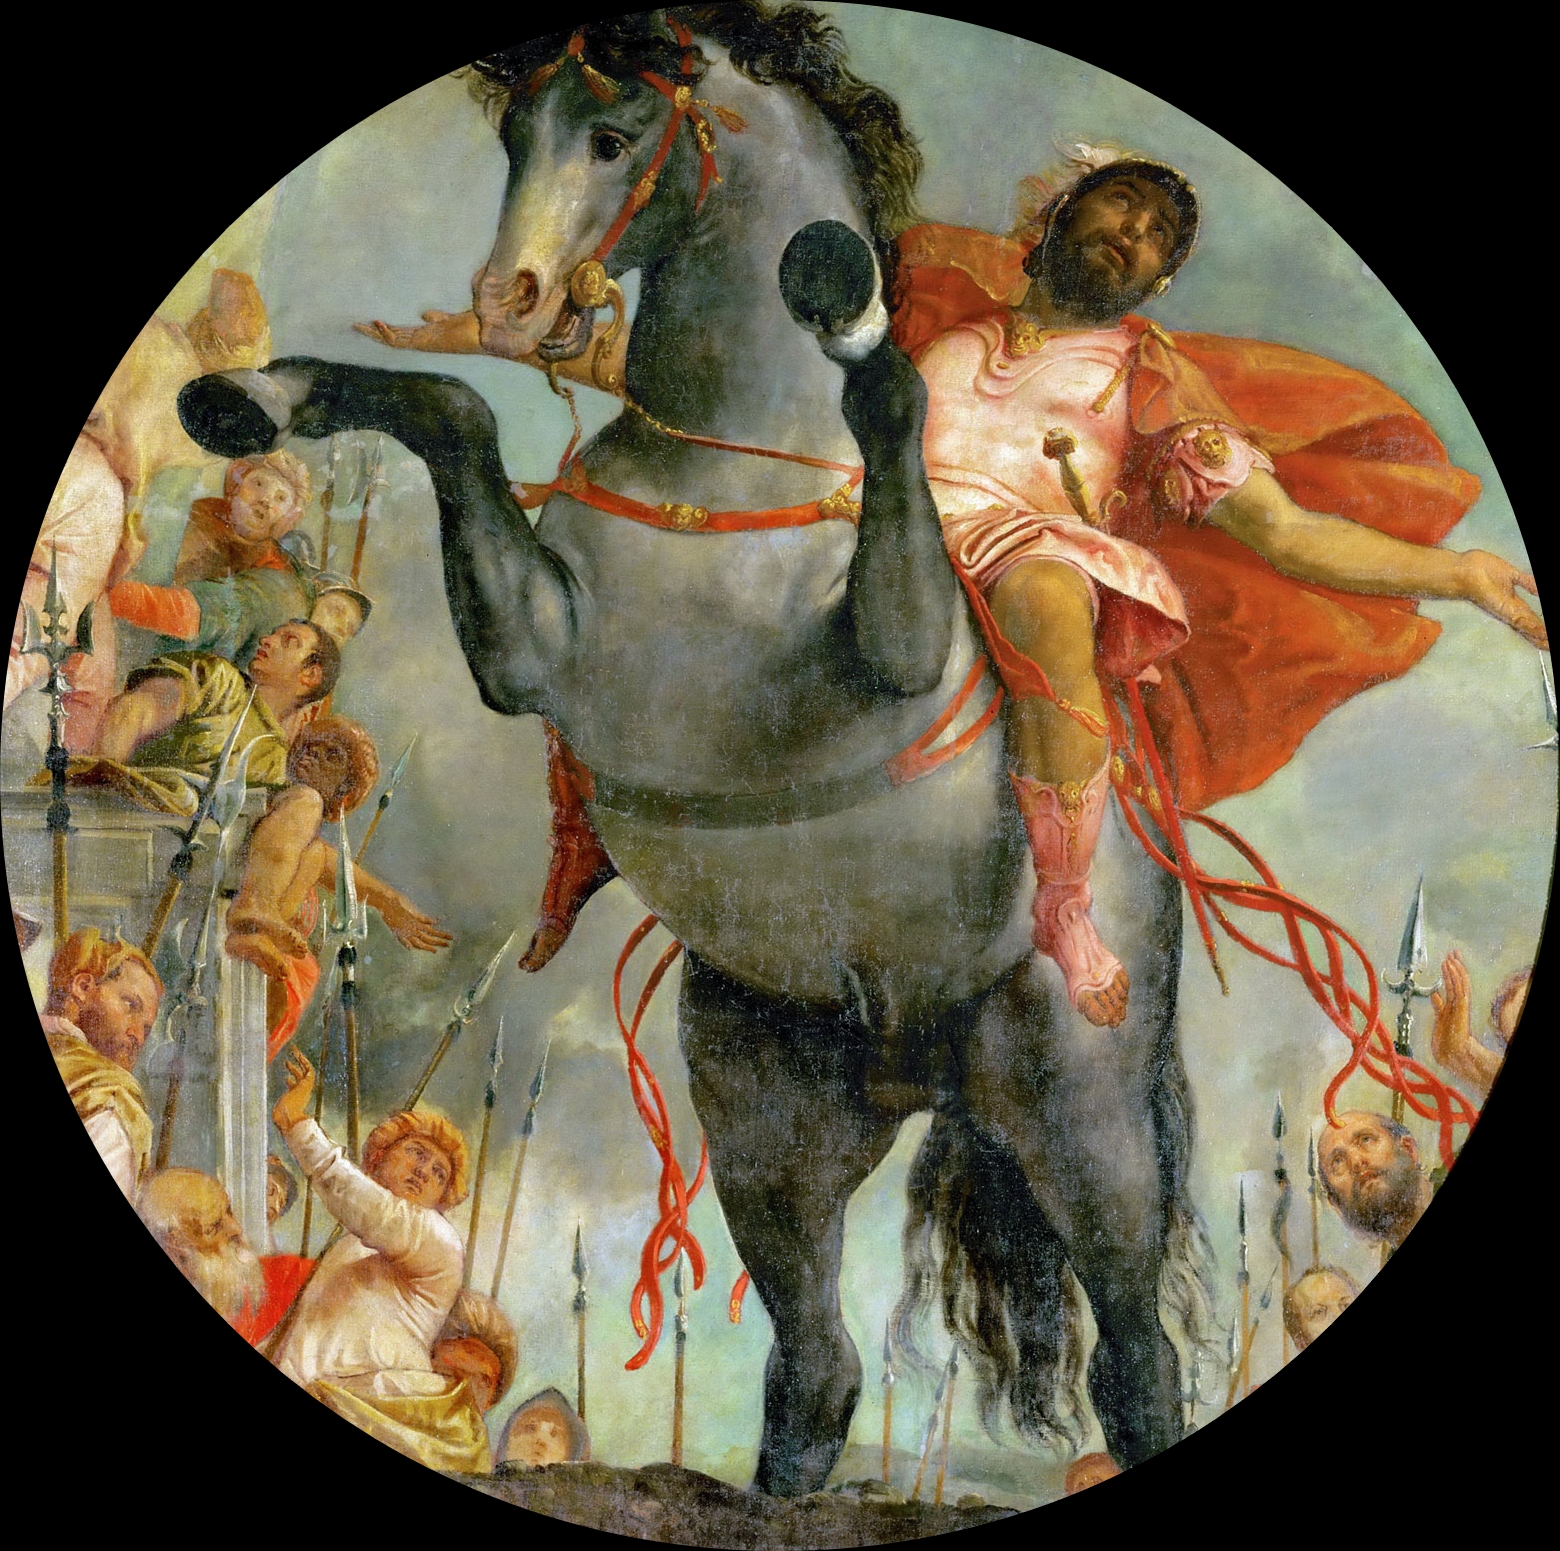 Paolo+Veronese-1528-1588 (144).jpg